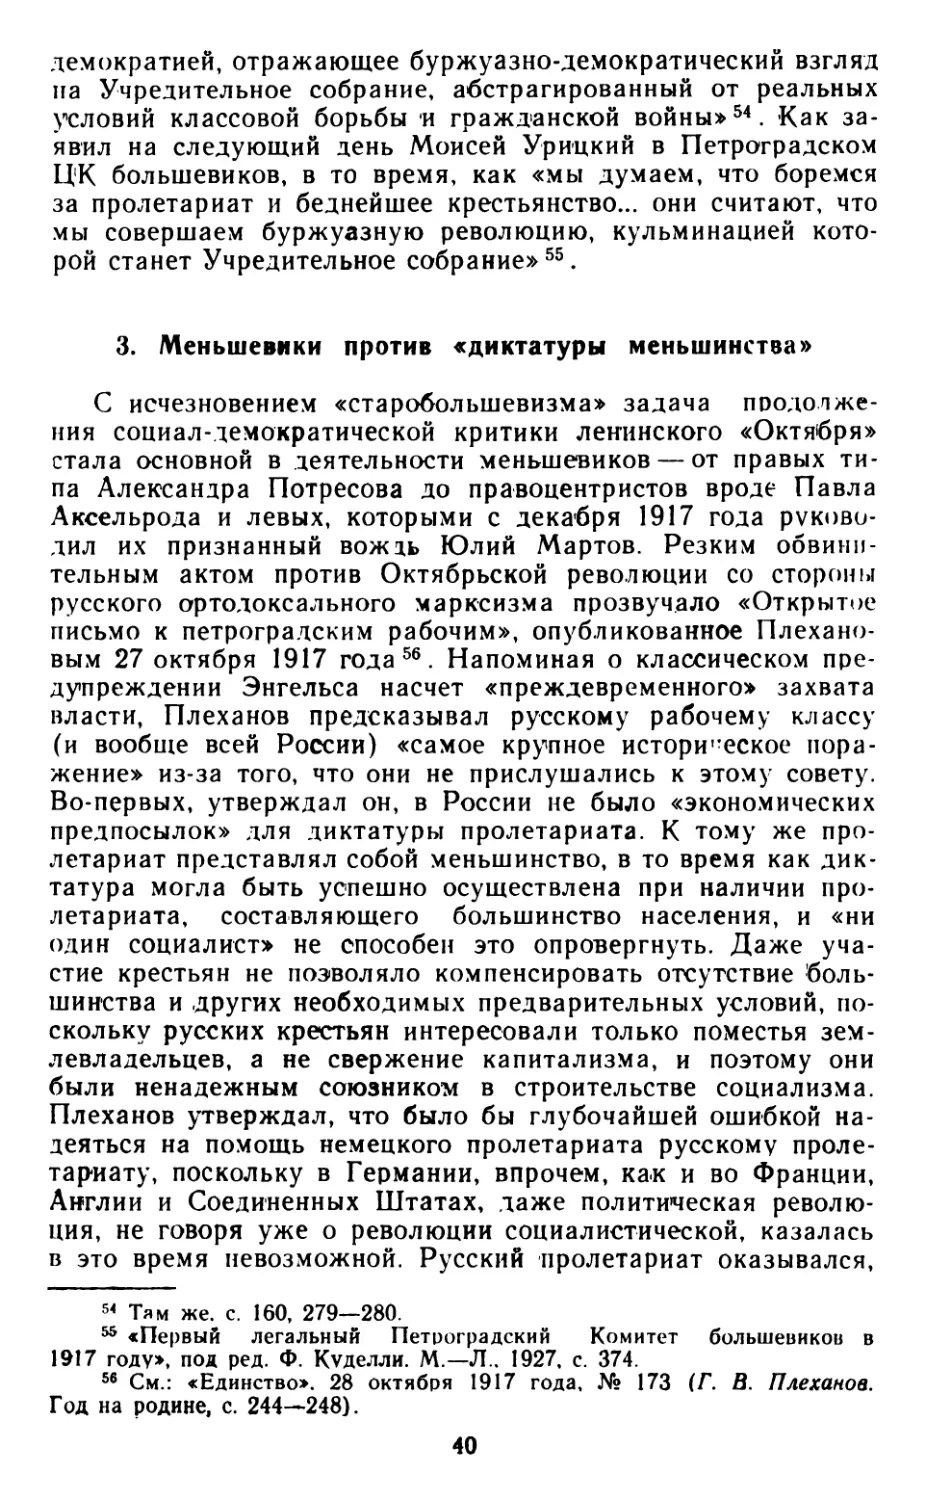 3. Меньшевики против «диктатуры меньшинства»